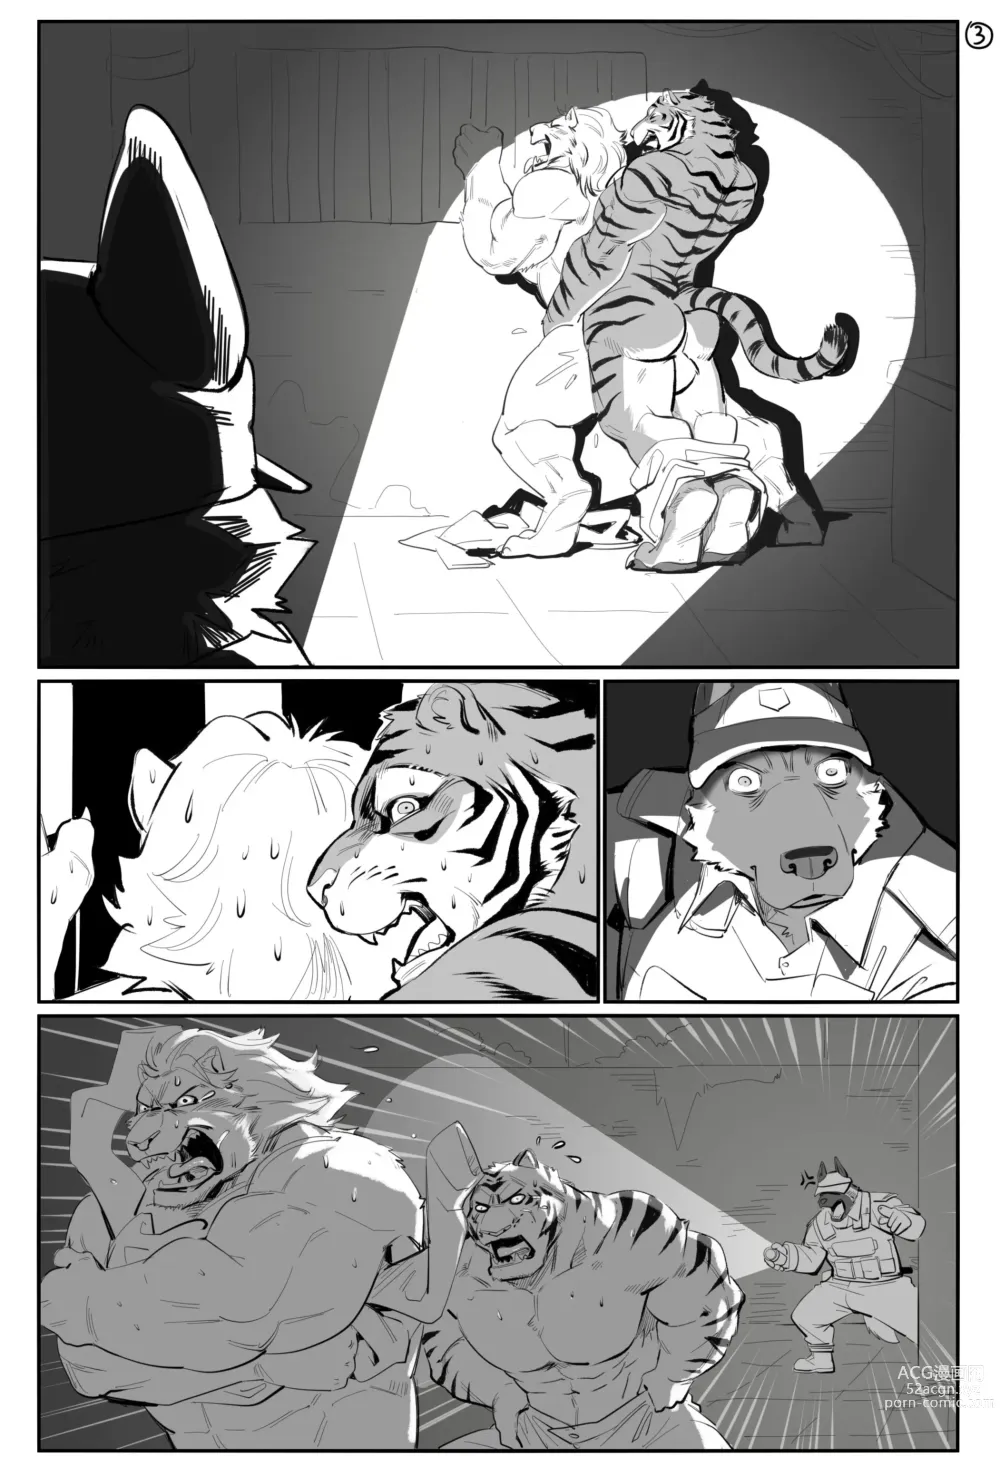 Page 4 of doujinshi @1500jiangbao - Furry comics